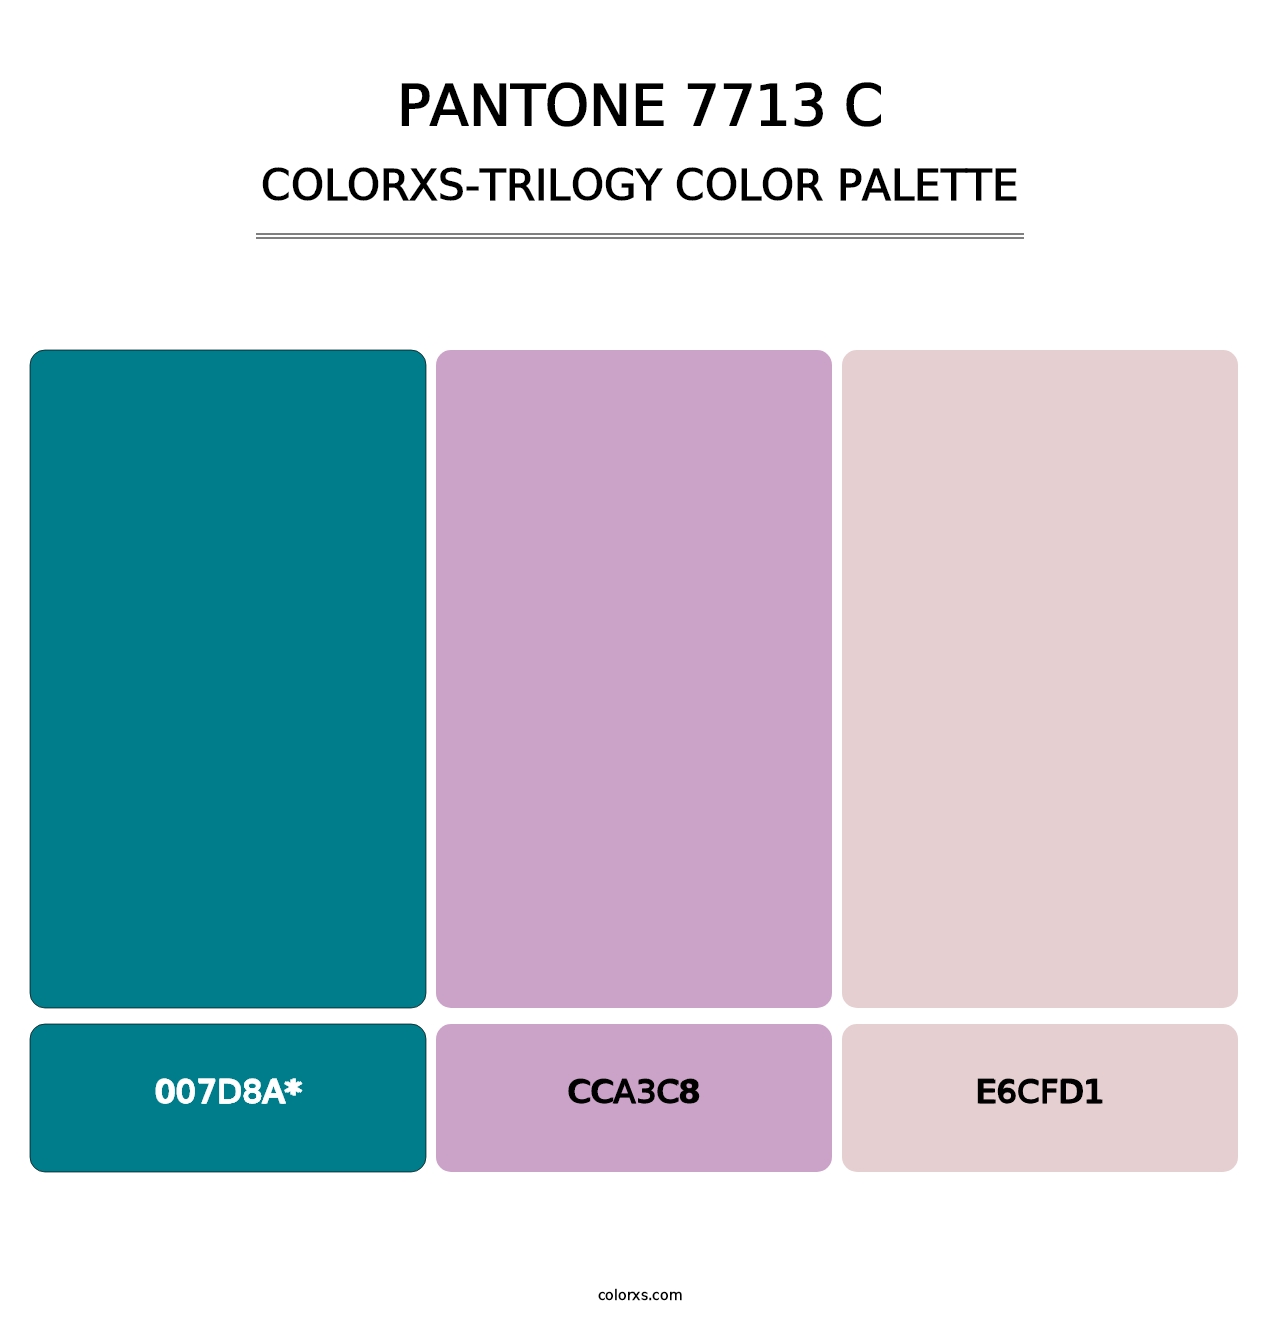 PANTONE 7713 C - Colorxs Trilogy Palette